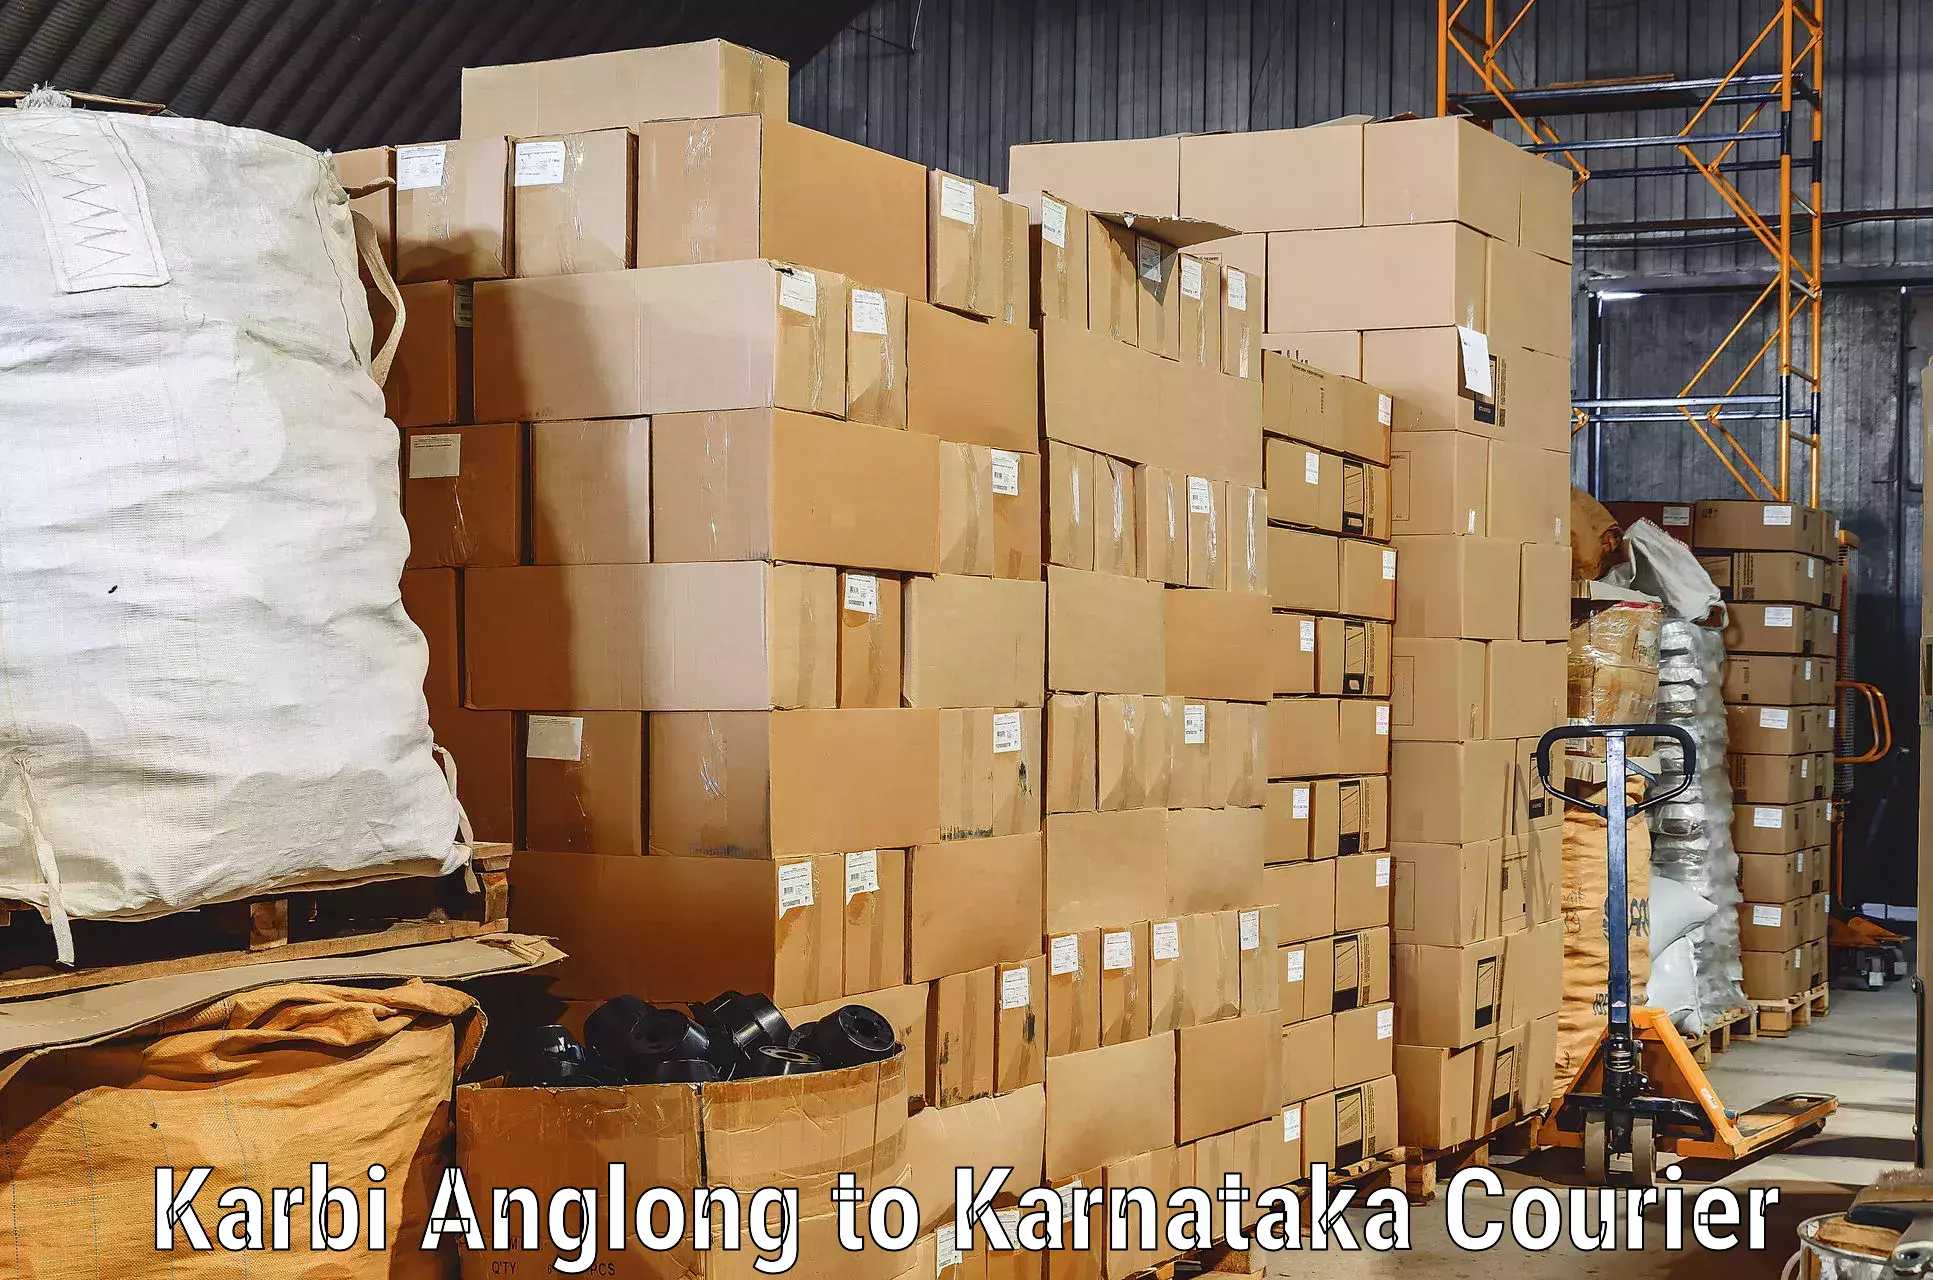 Furniture handling services in Karbi Anglong to Gulbarga